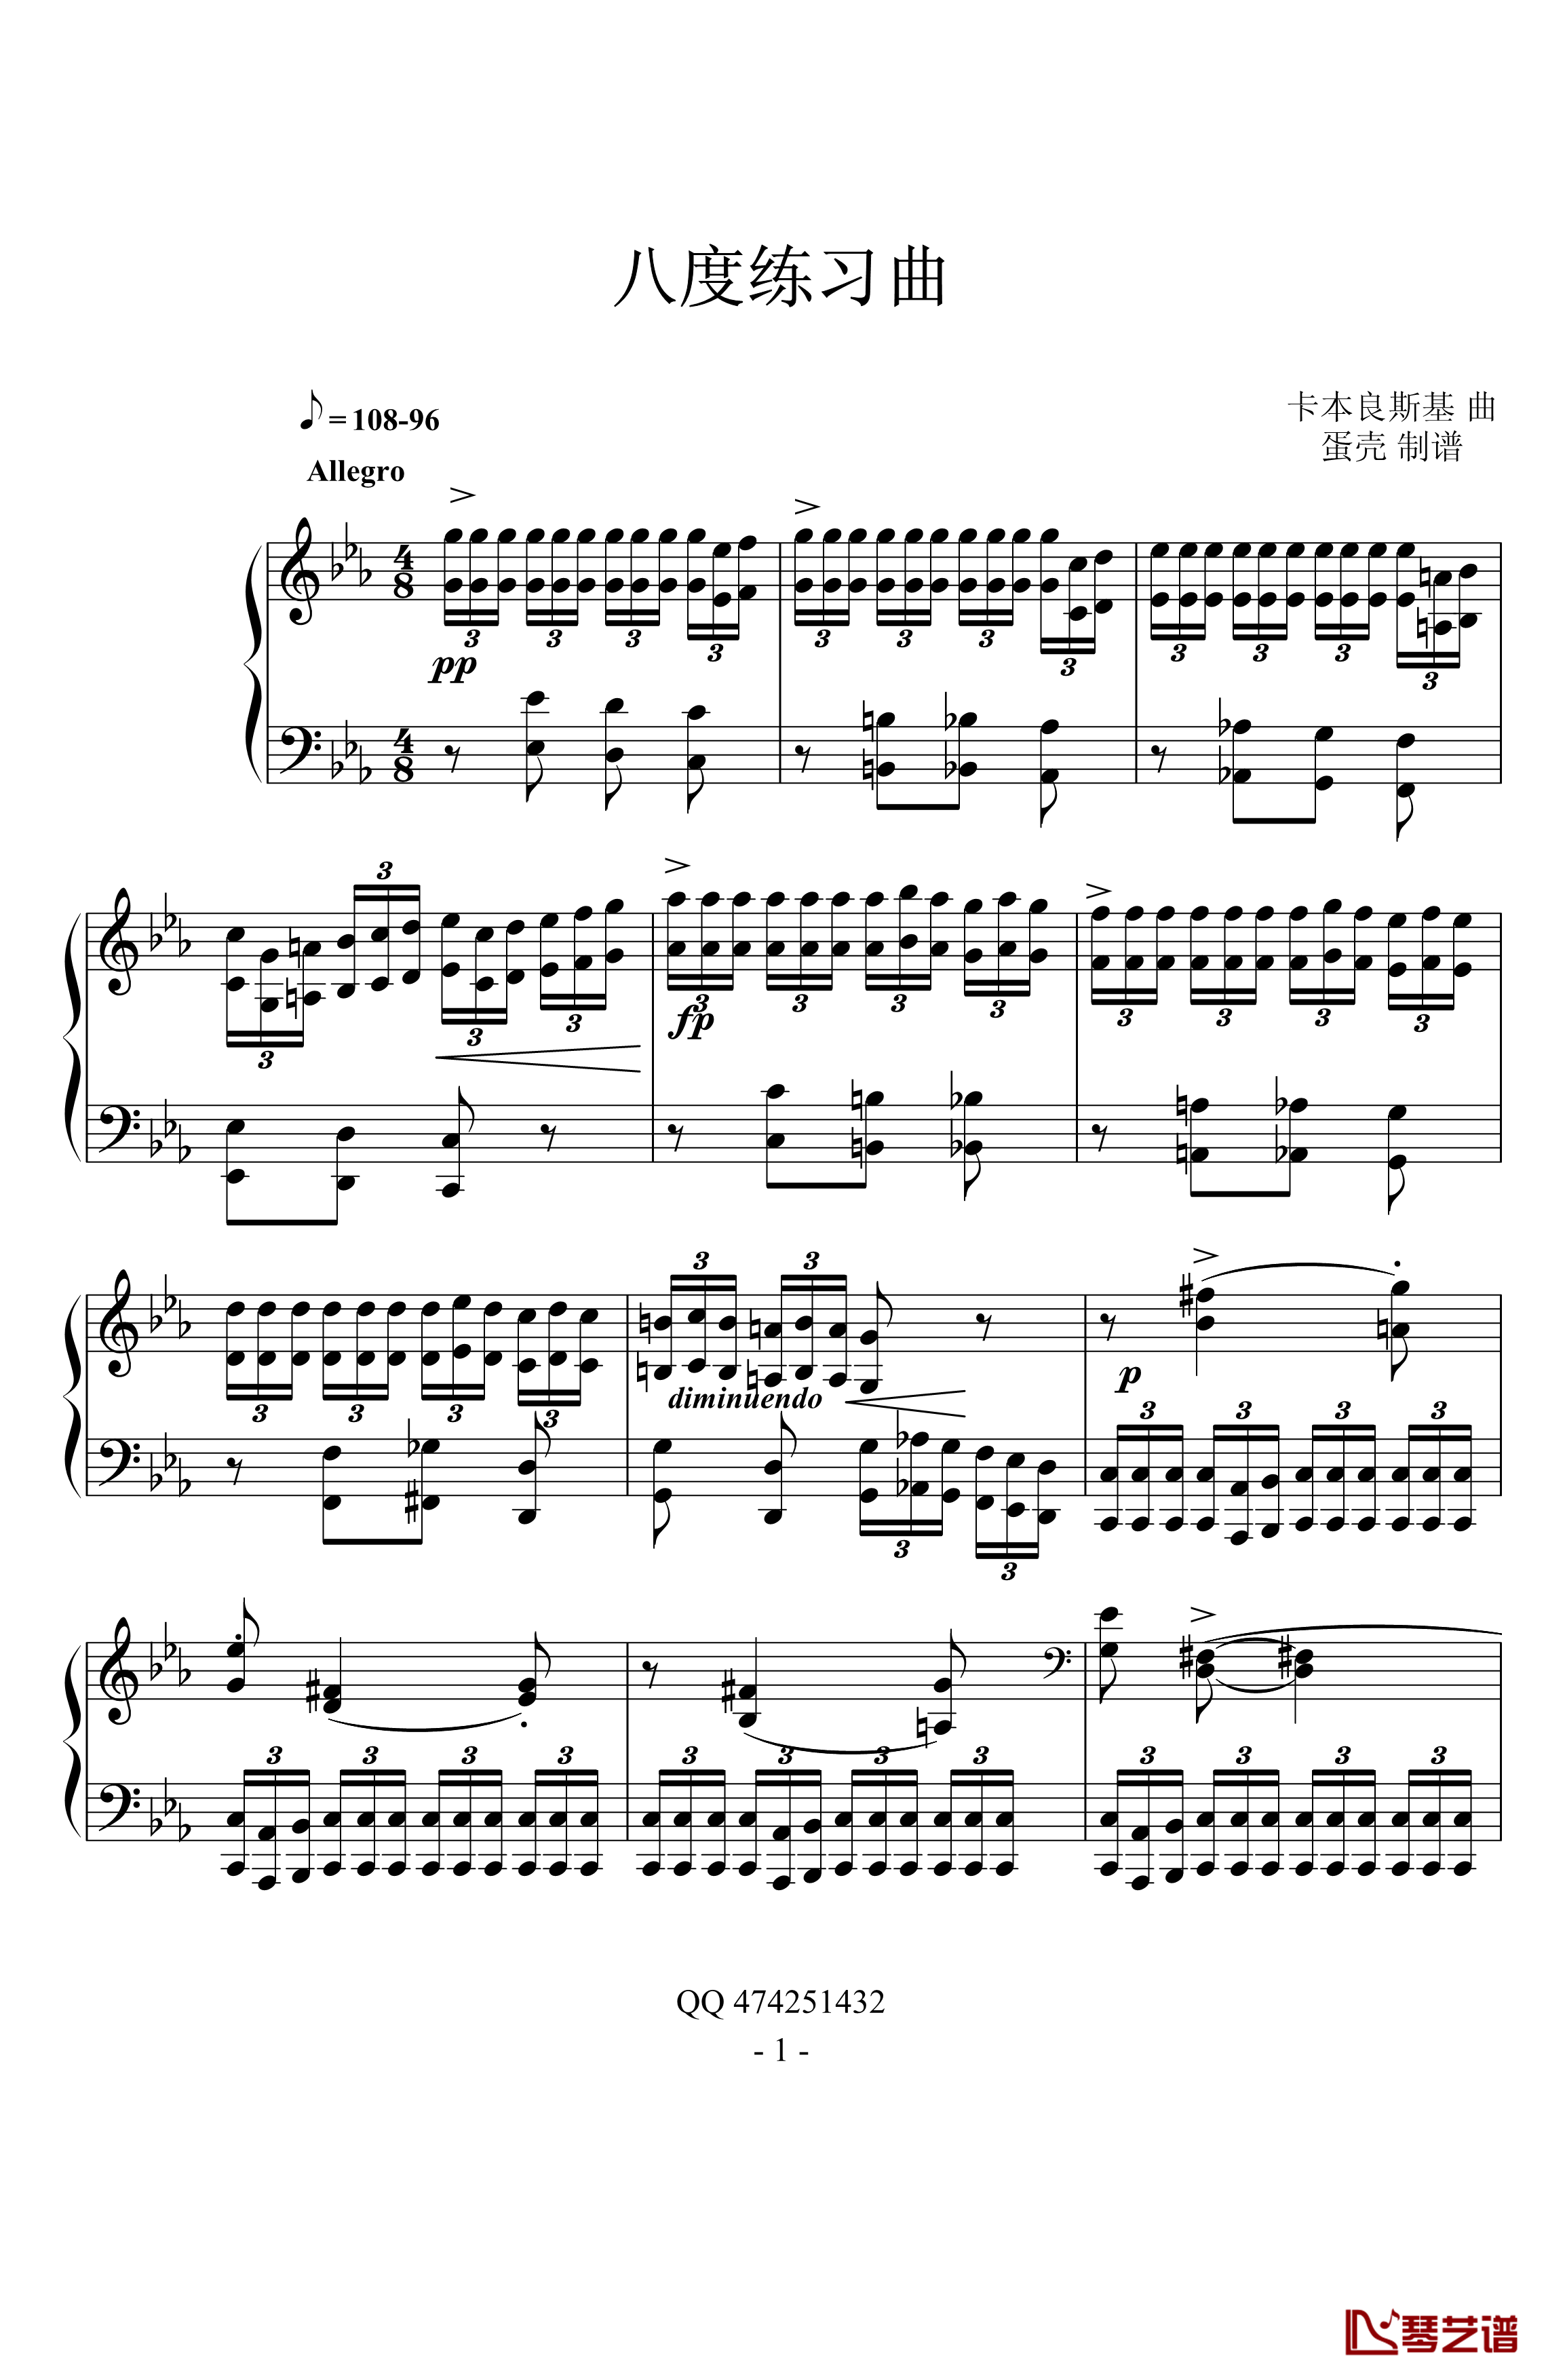 八度练习曲钢琴谱-十级类技巧性练习曲-卡本良斯基1